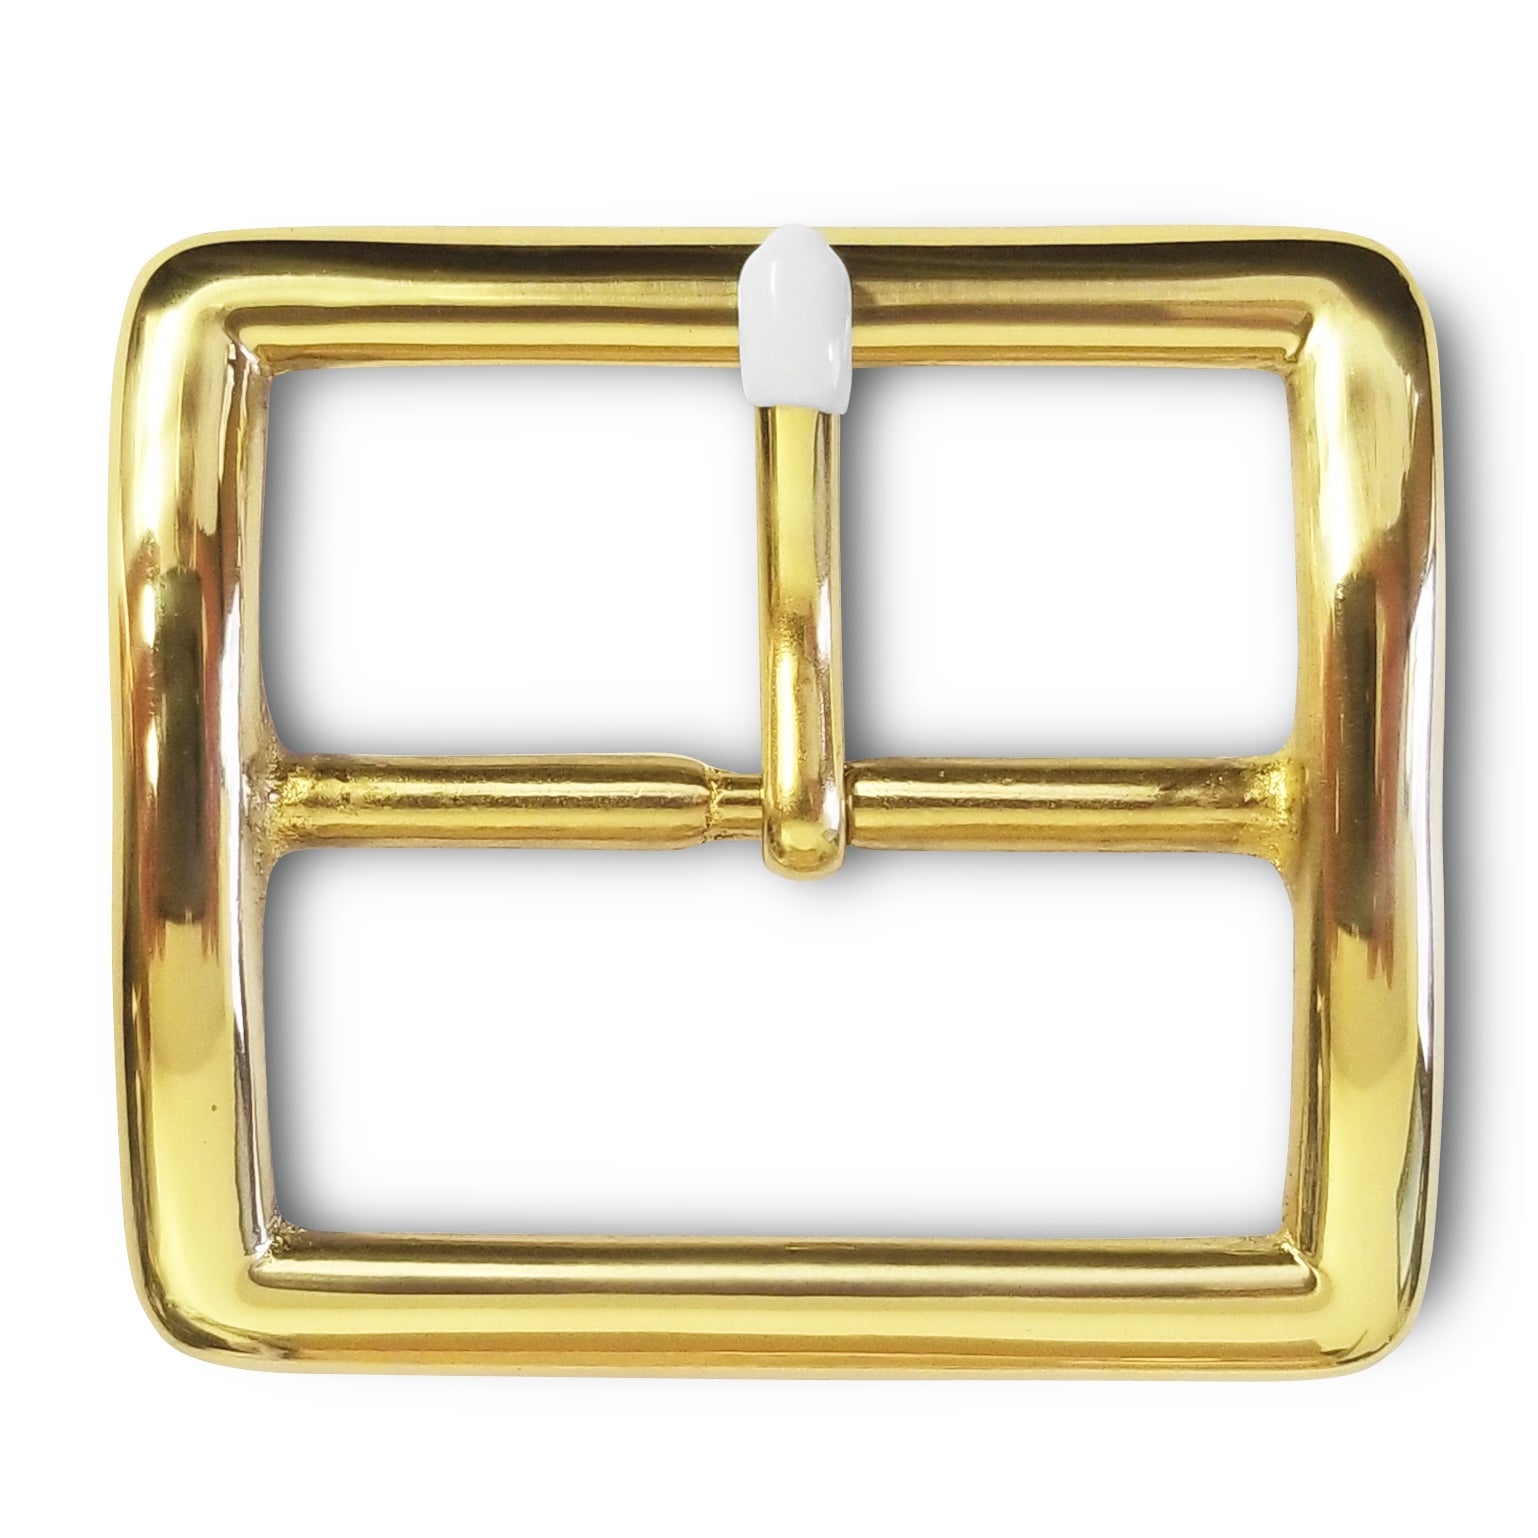 First Class Duty Belt Replacement Belt Buckle (Gloss Gold)